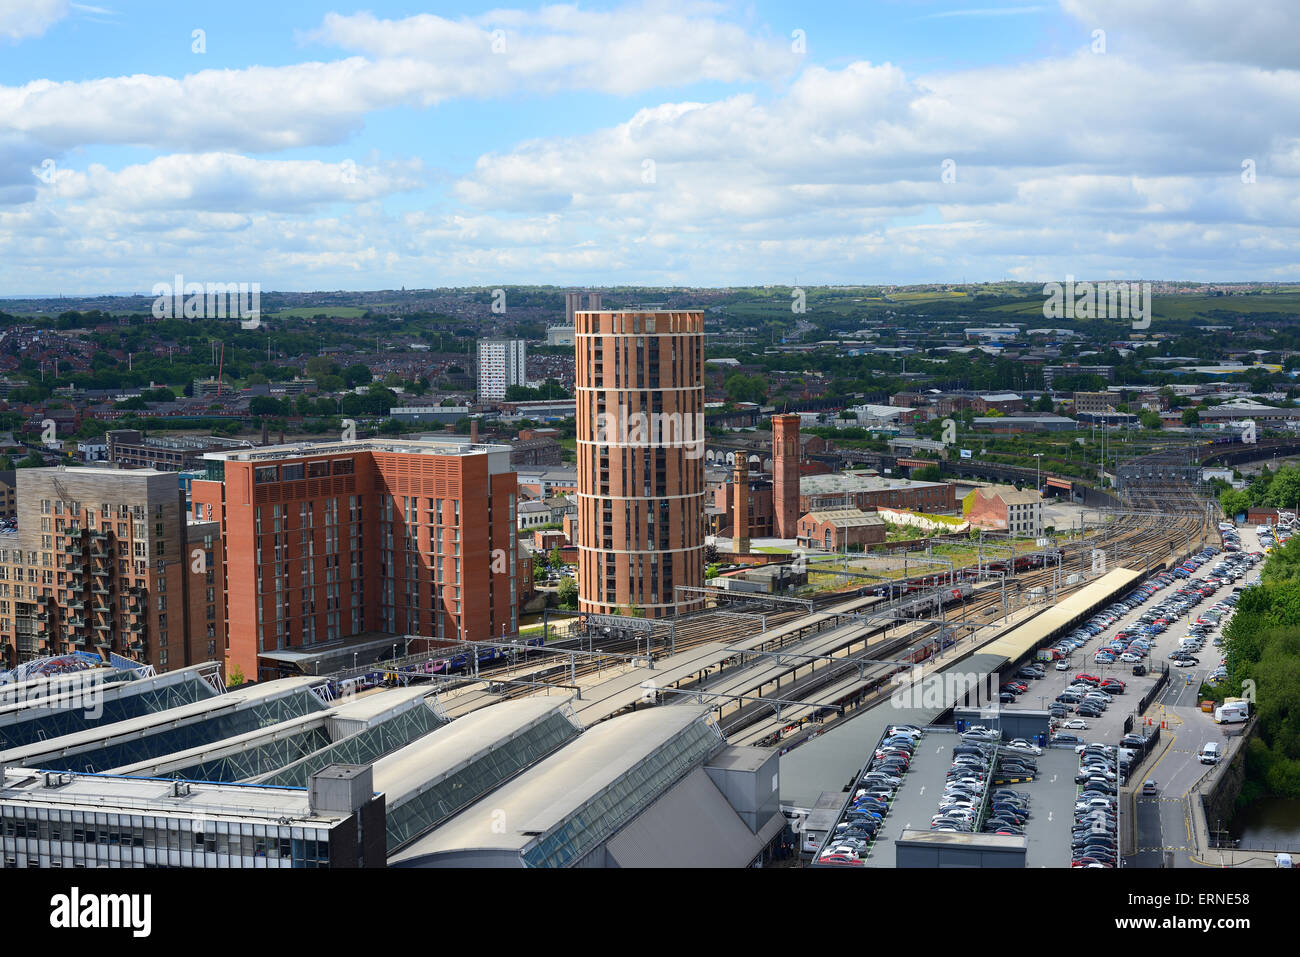 erhöhte Ansicht von Leeds City Station und Getreidespeicher Wharf Gebäude Yorkshire Vereinigtes Königreich Stockfoto